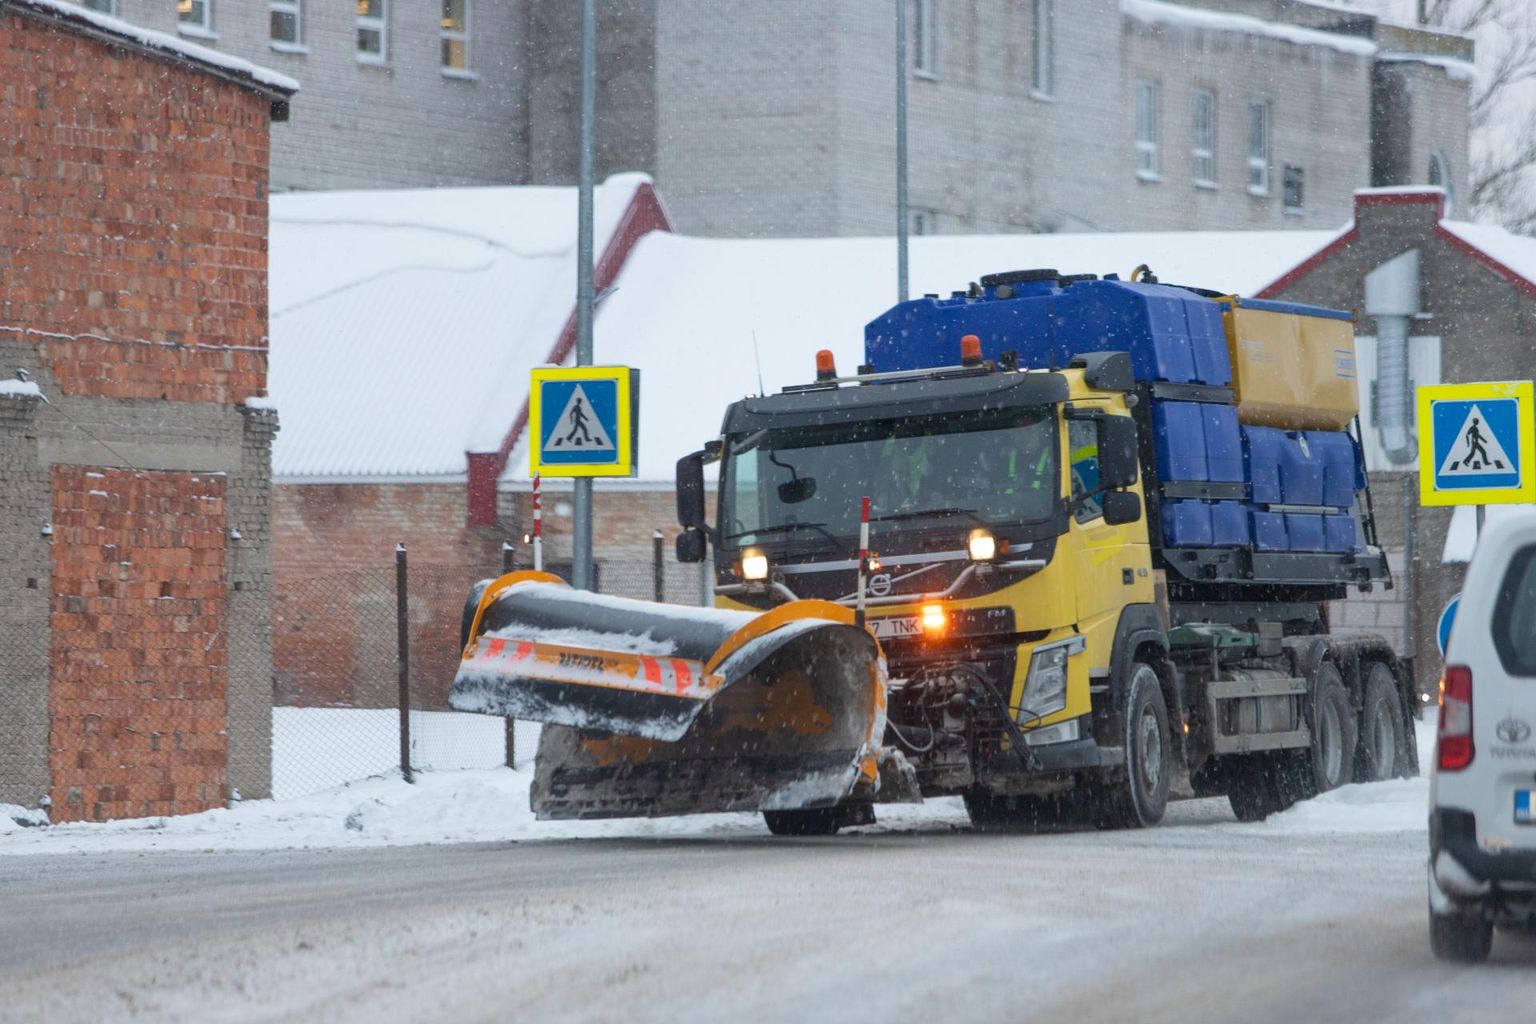 Lumesadu ajas teehooldusmasinad Viljandis tööle 21. novembril, mil on tehtud ka see foto.